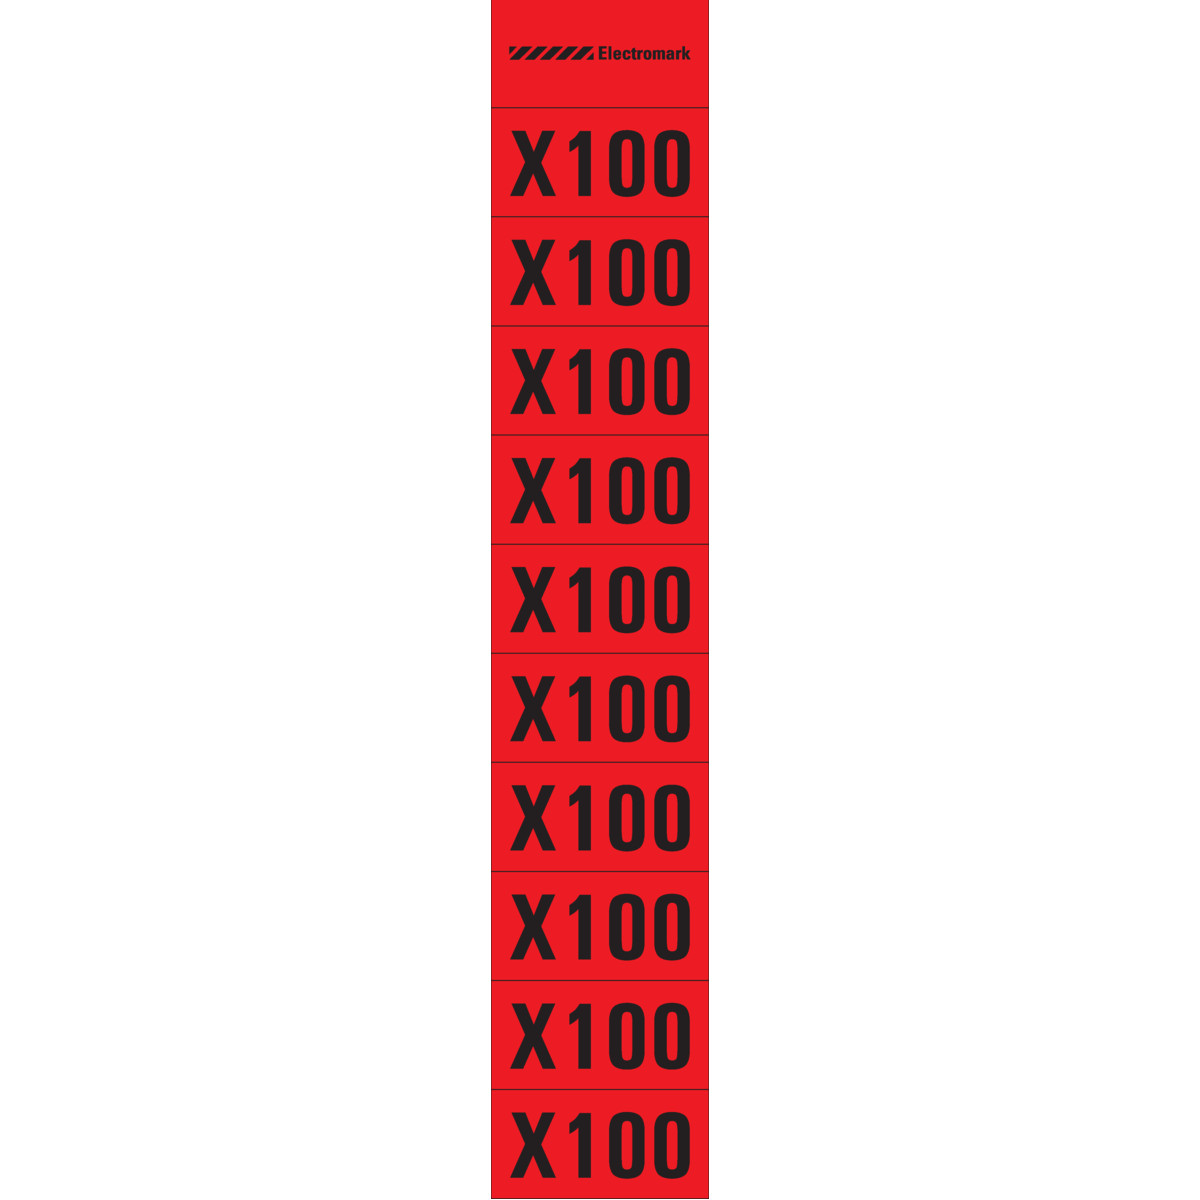 X100 Meter Multiplier Label